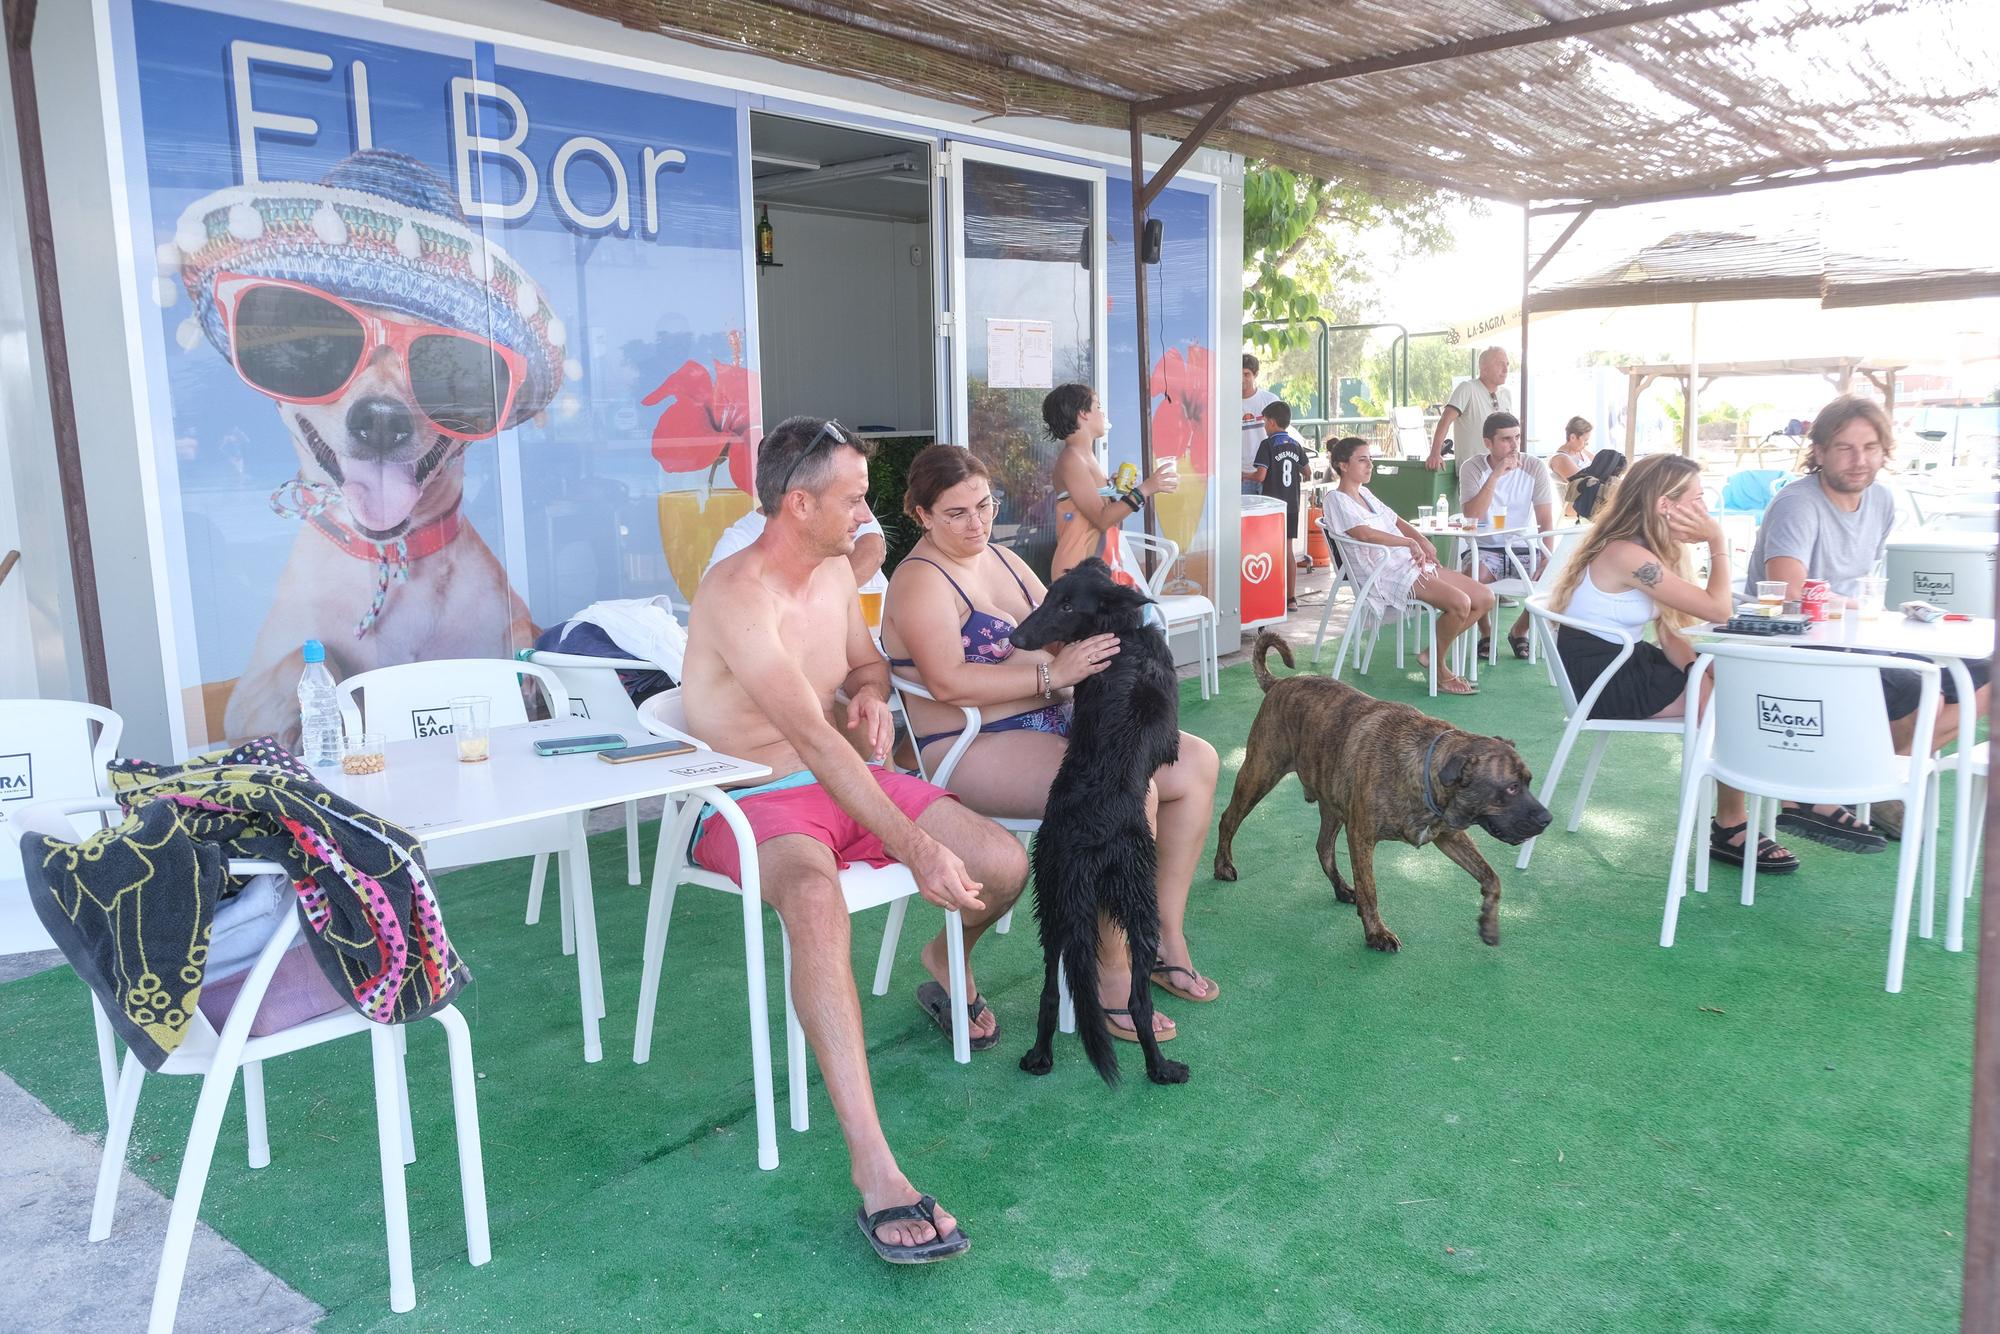 Así es la nueva piscina para perros que ha abierto en La Marina